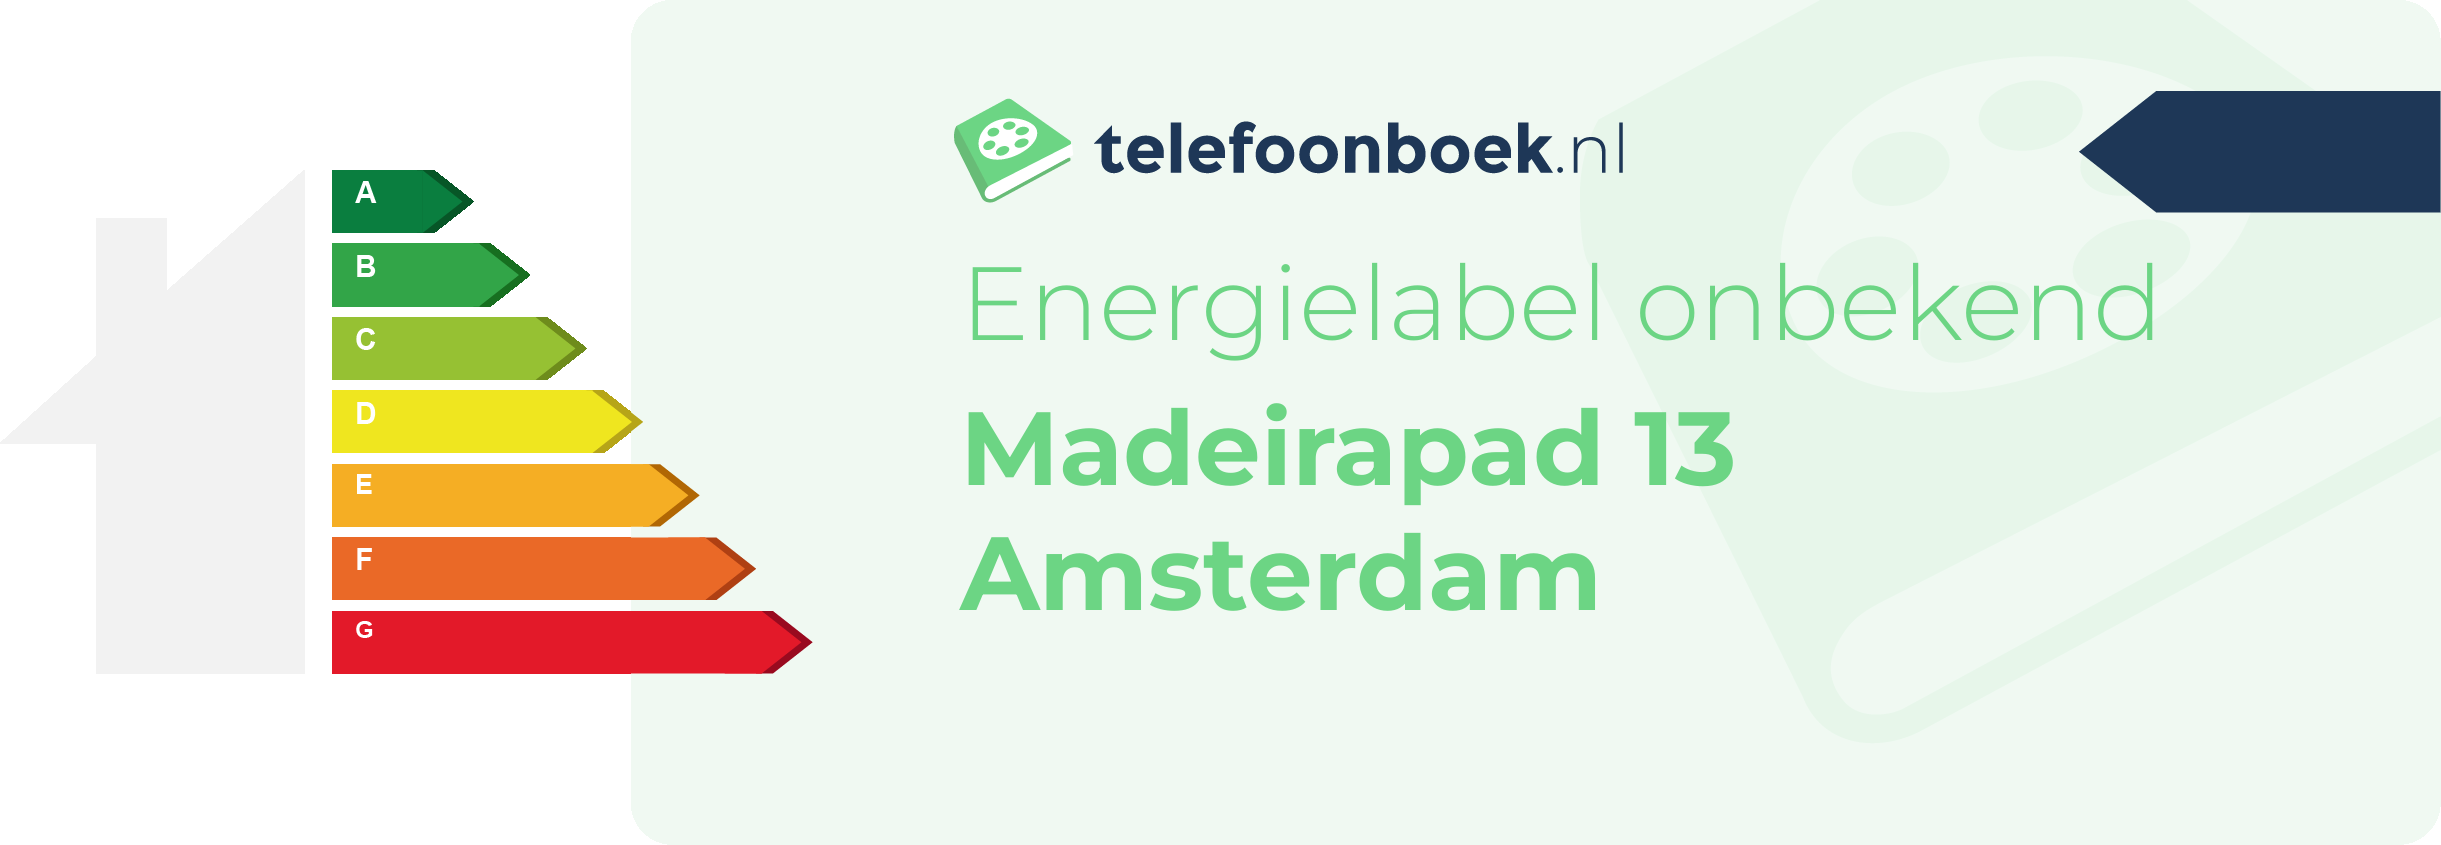 Energielabel Madeirapad 13 Amsterdam